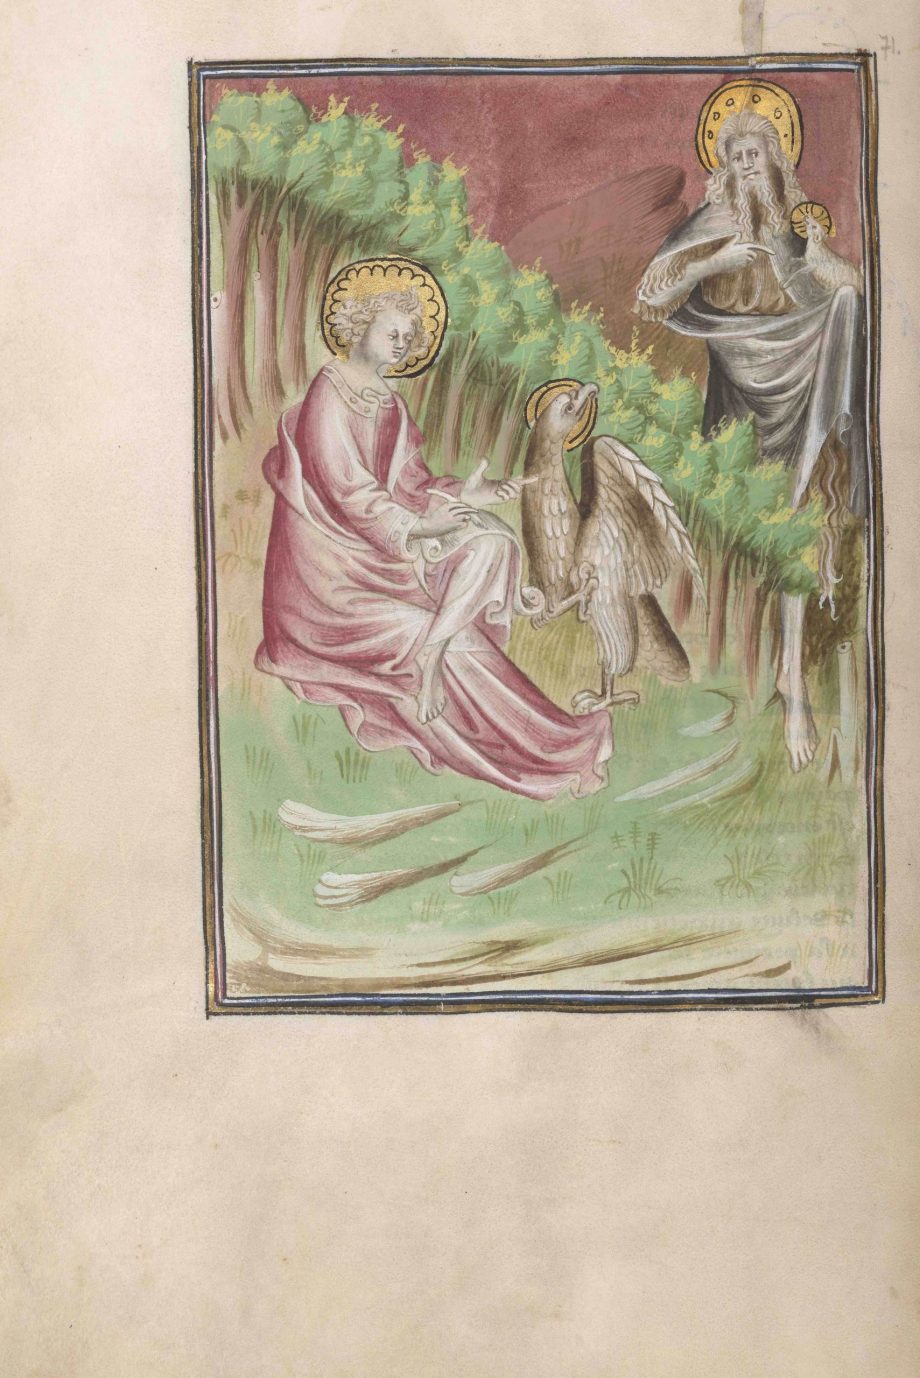 Folio 71 verso del manuscrito del Apocalipsis de Berry mostrando Juan el Bautista y el evangelista Juan